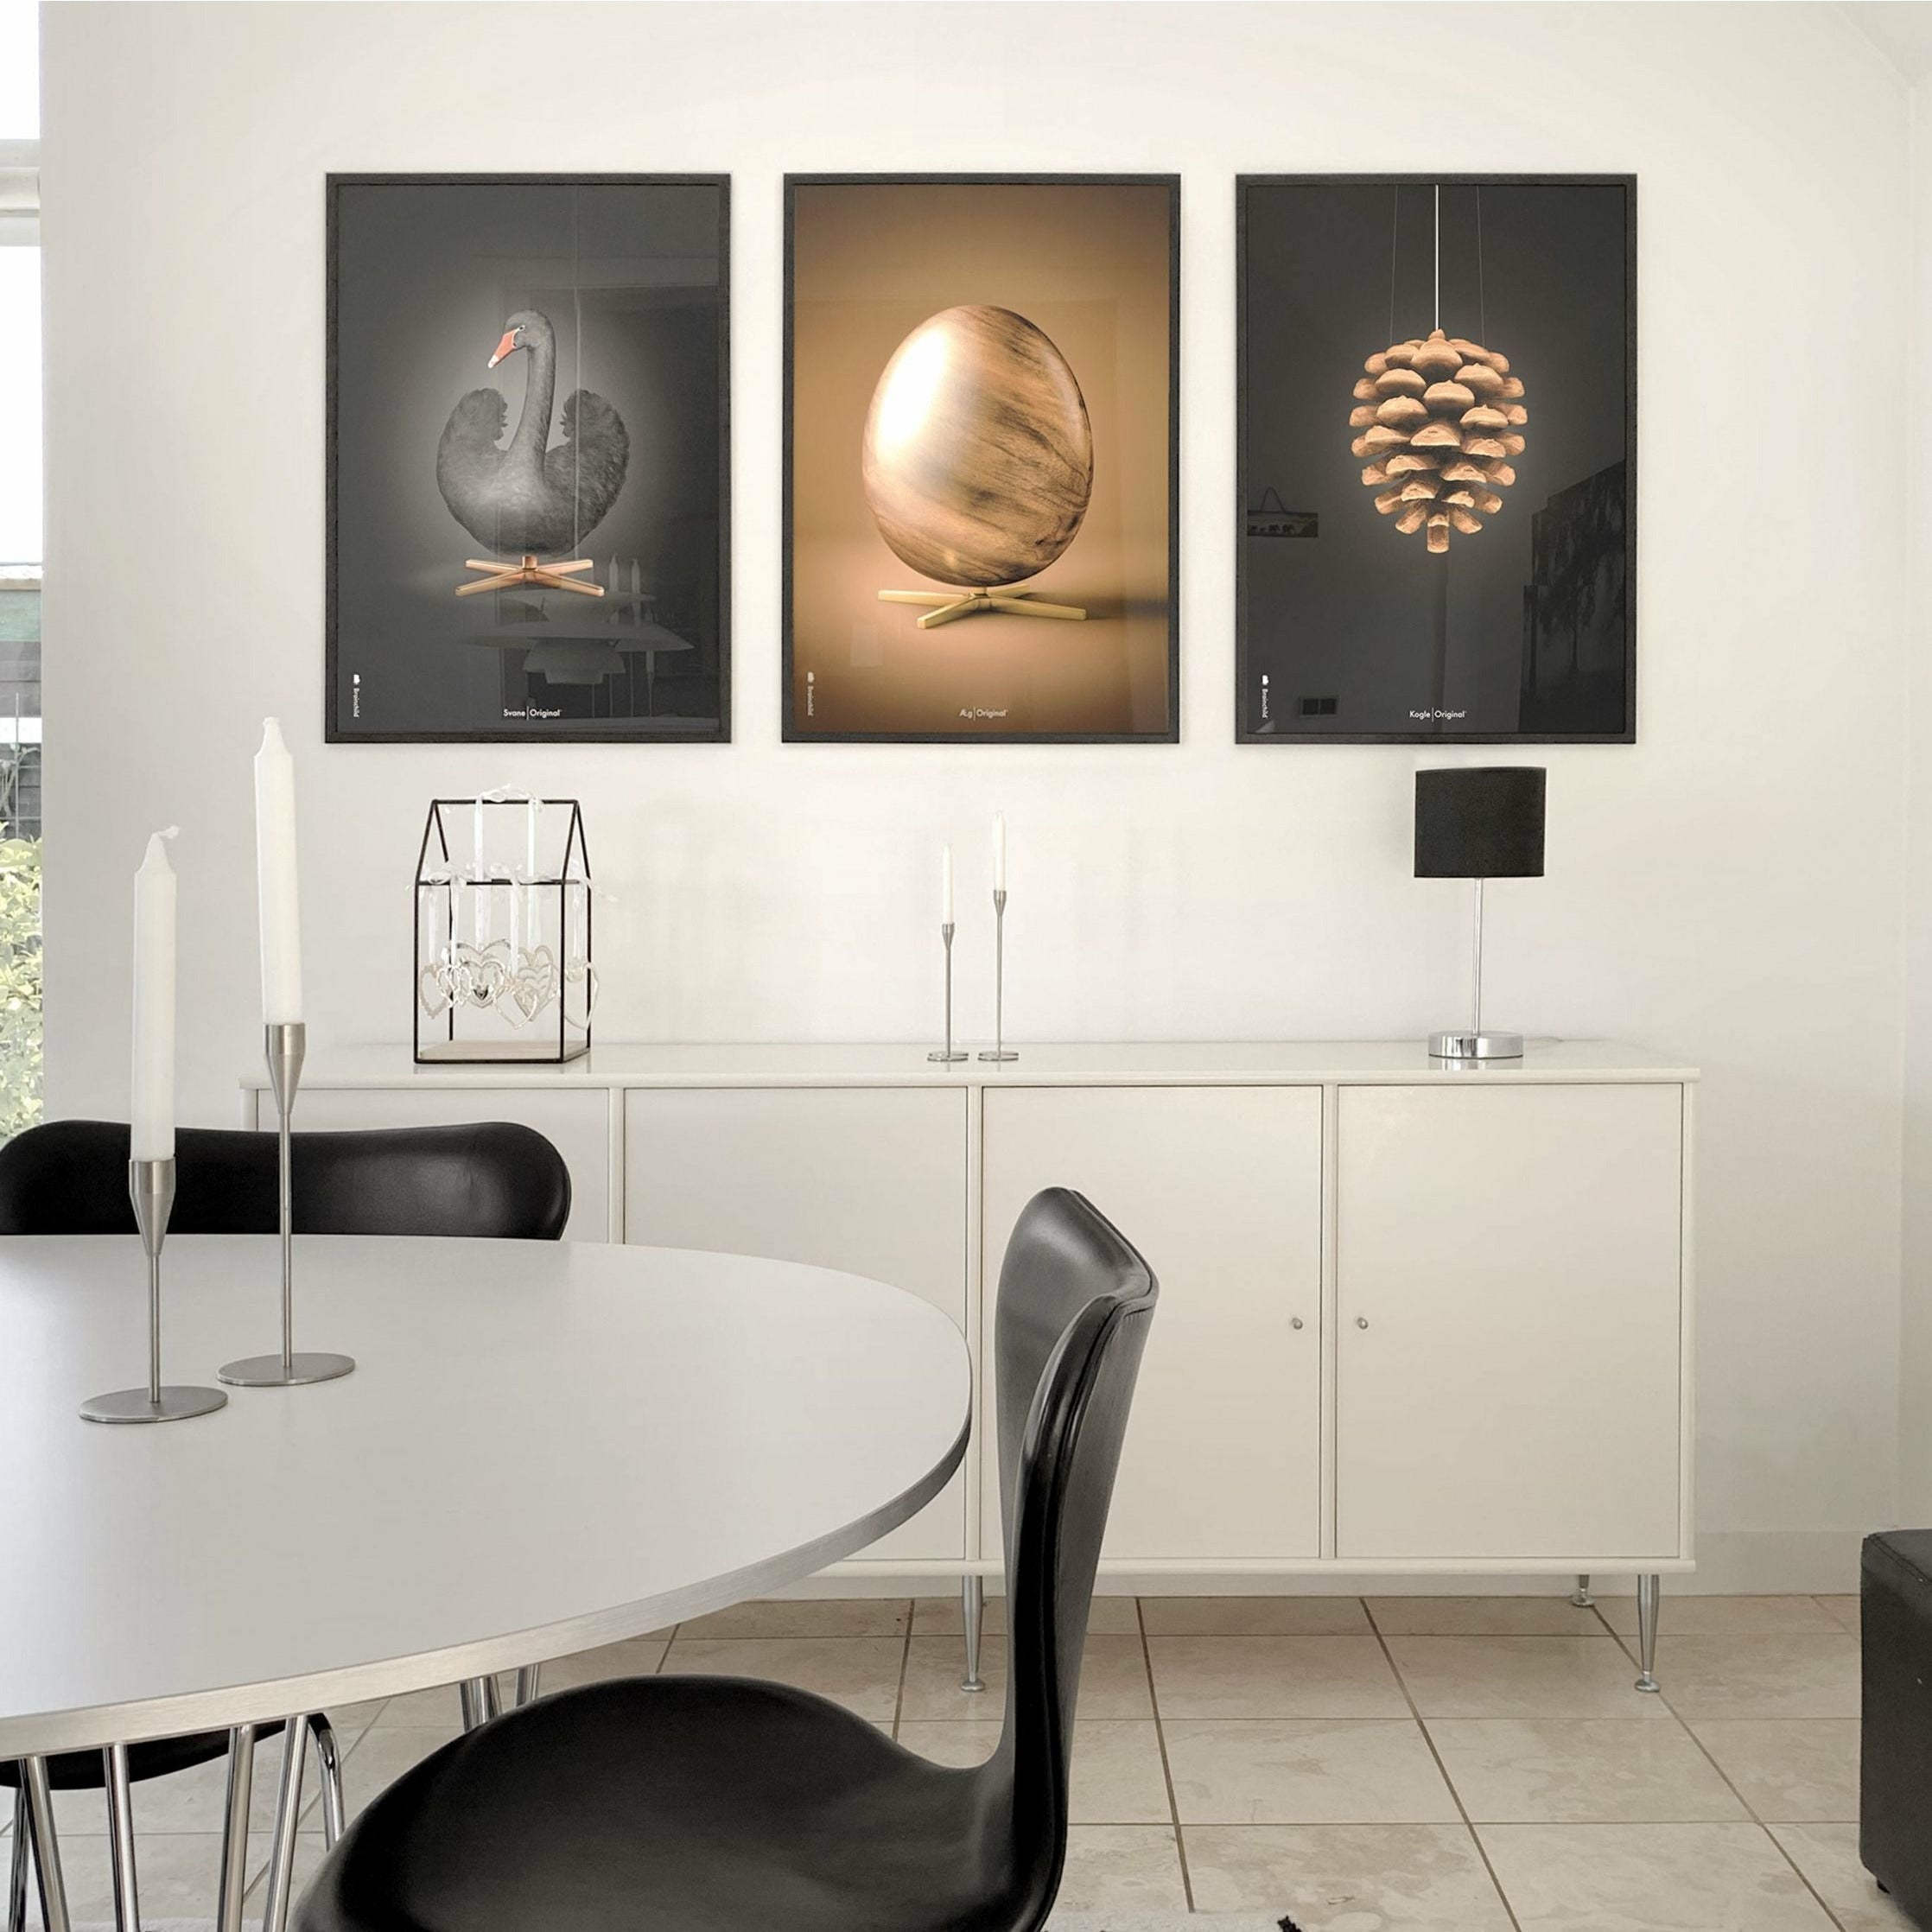 Poster classico di cigni da gioco, cornice in ottone 30x40 cm, sfondo nero/nero